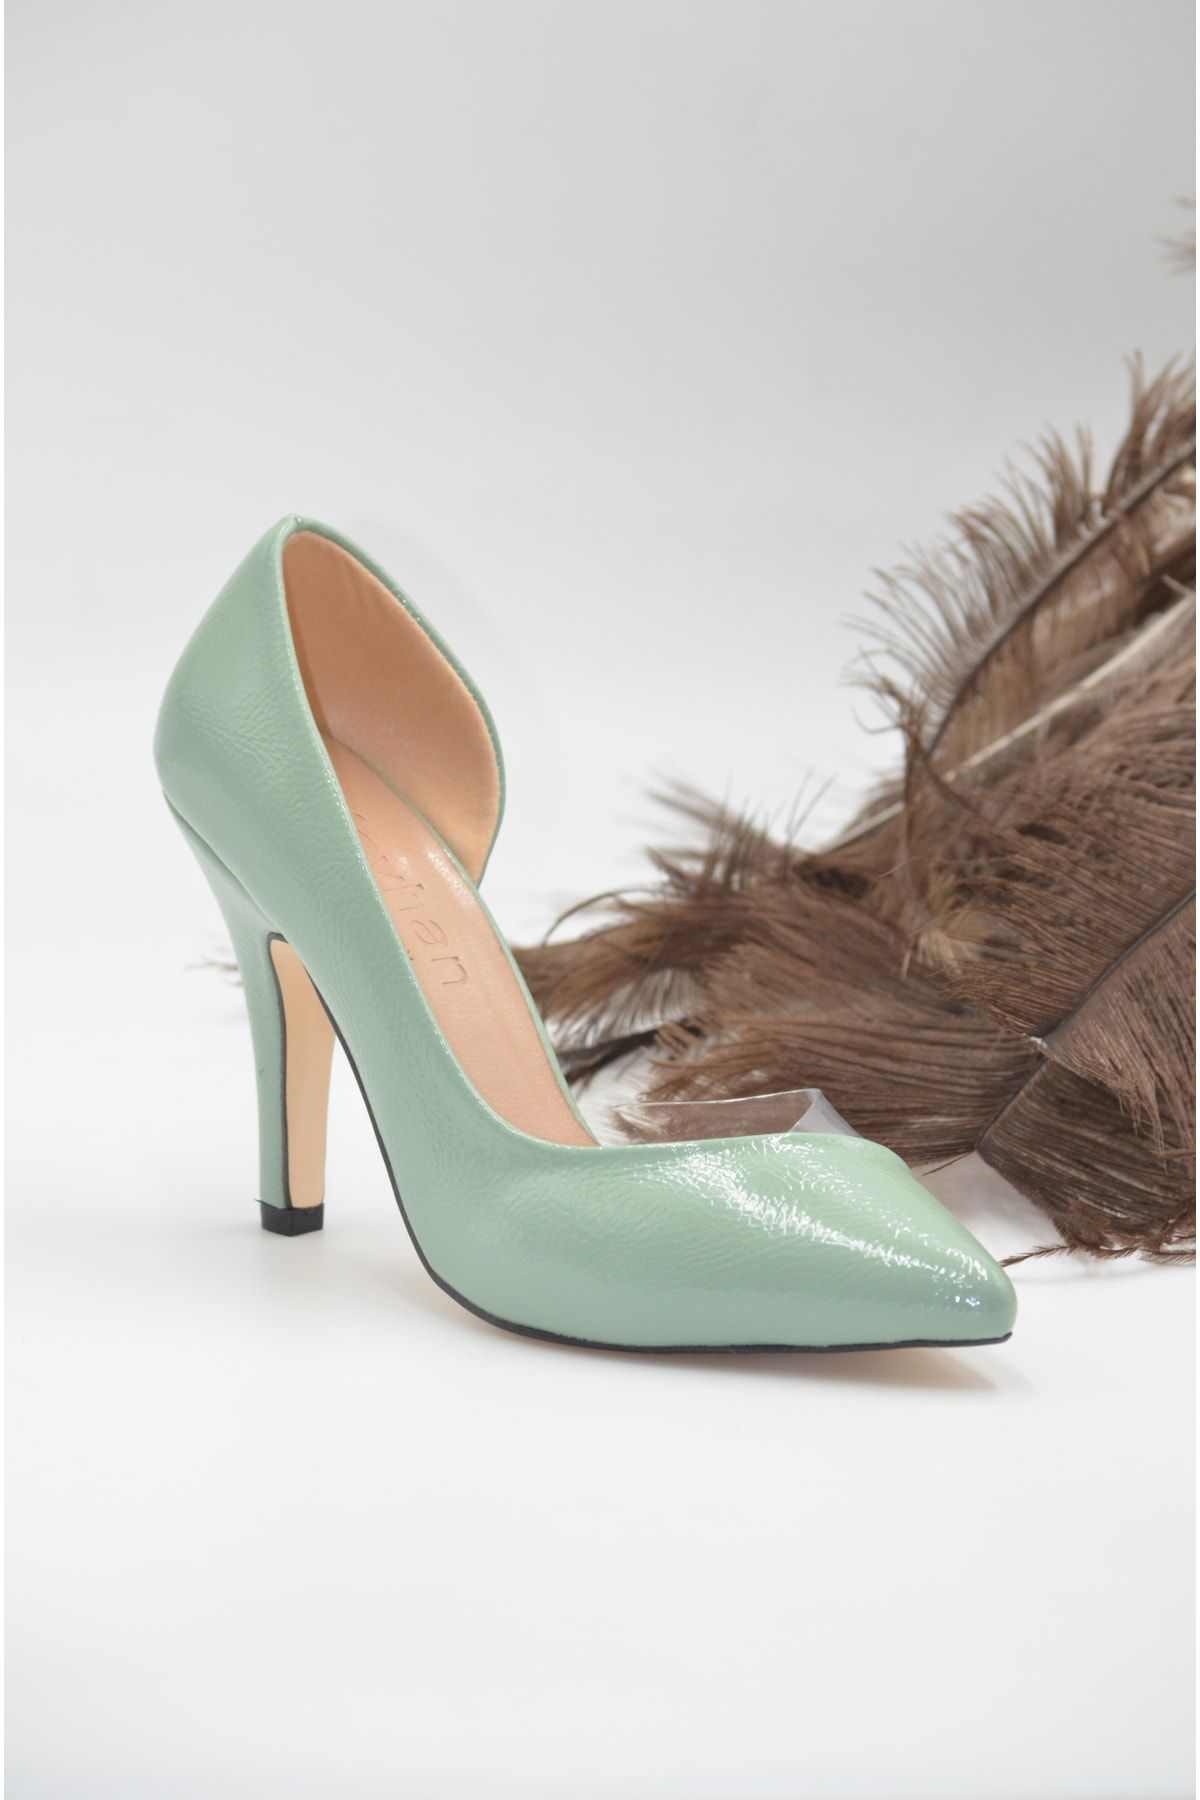 KunduraHane Su Yeşili Rugan Şeffaf Detaylı Kadın Topuklu Ayakkabı Stiletto